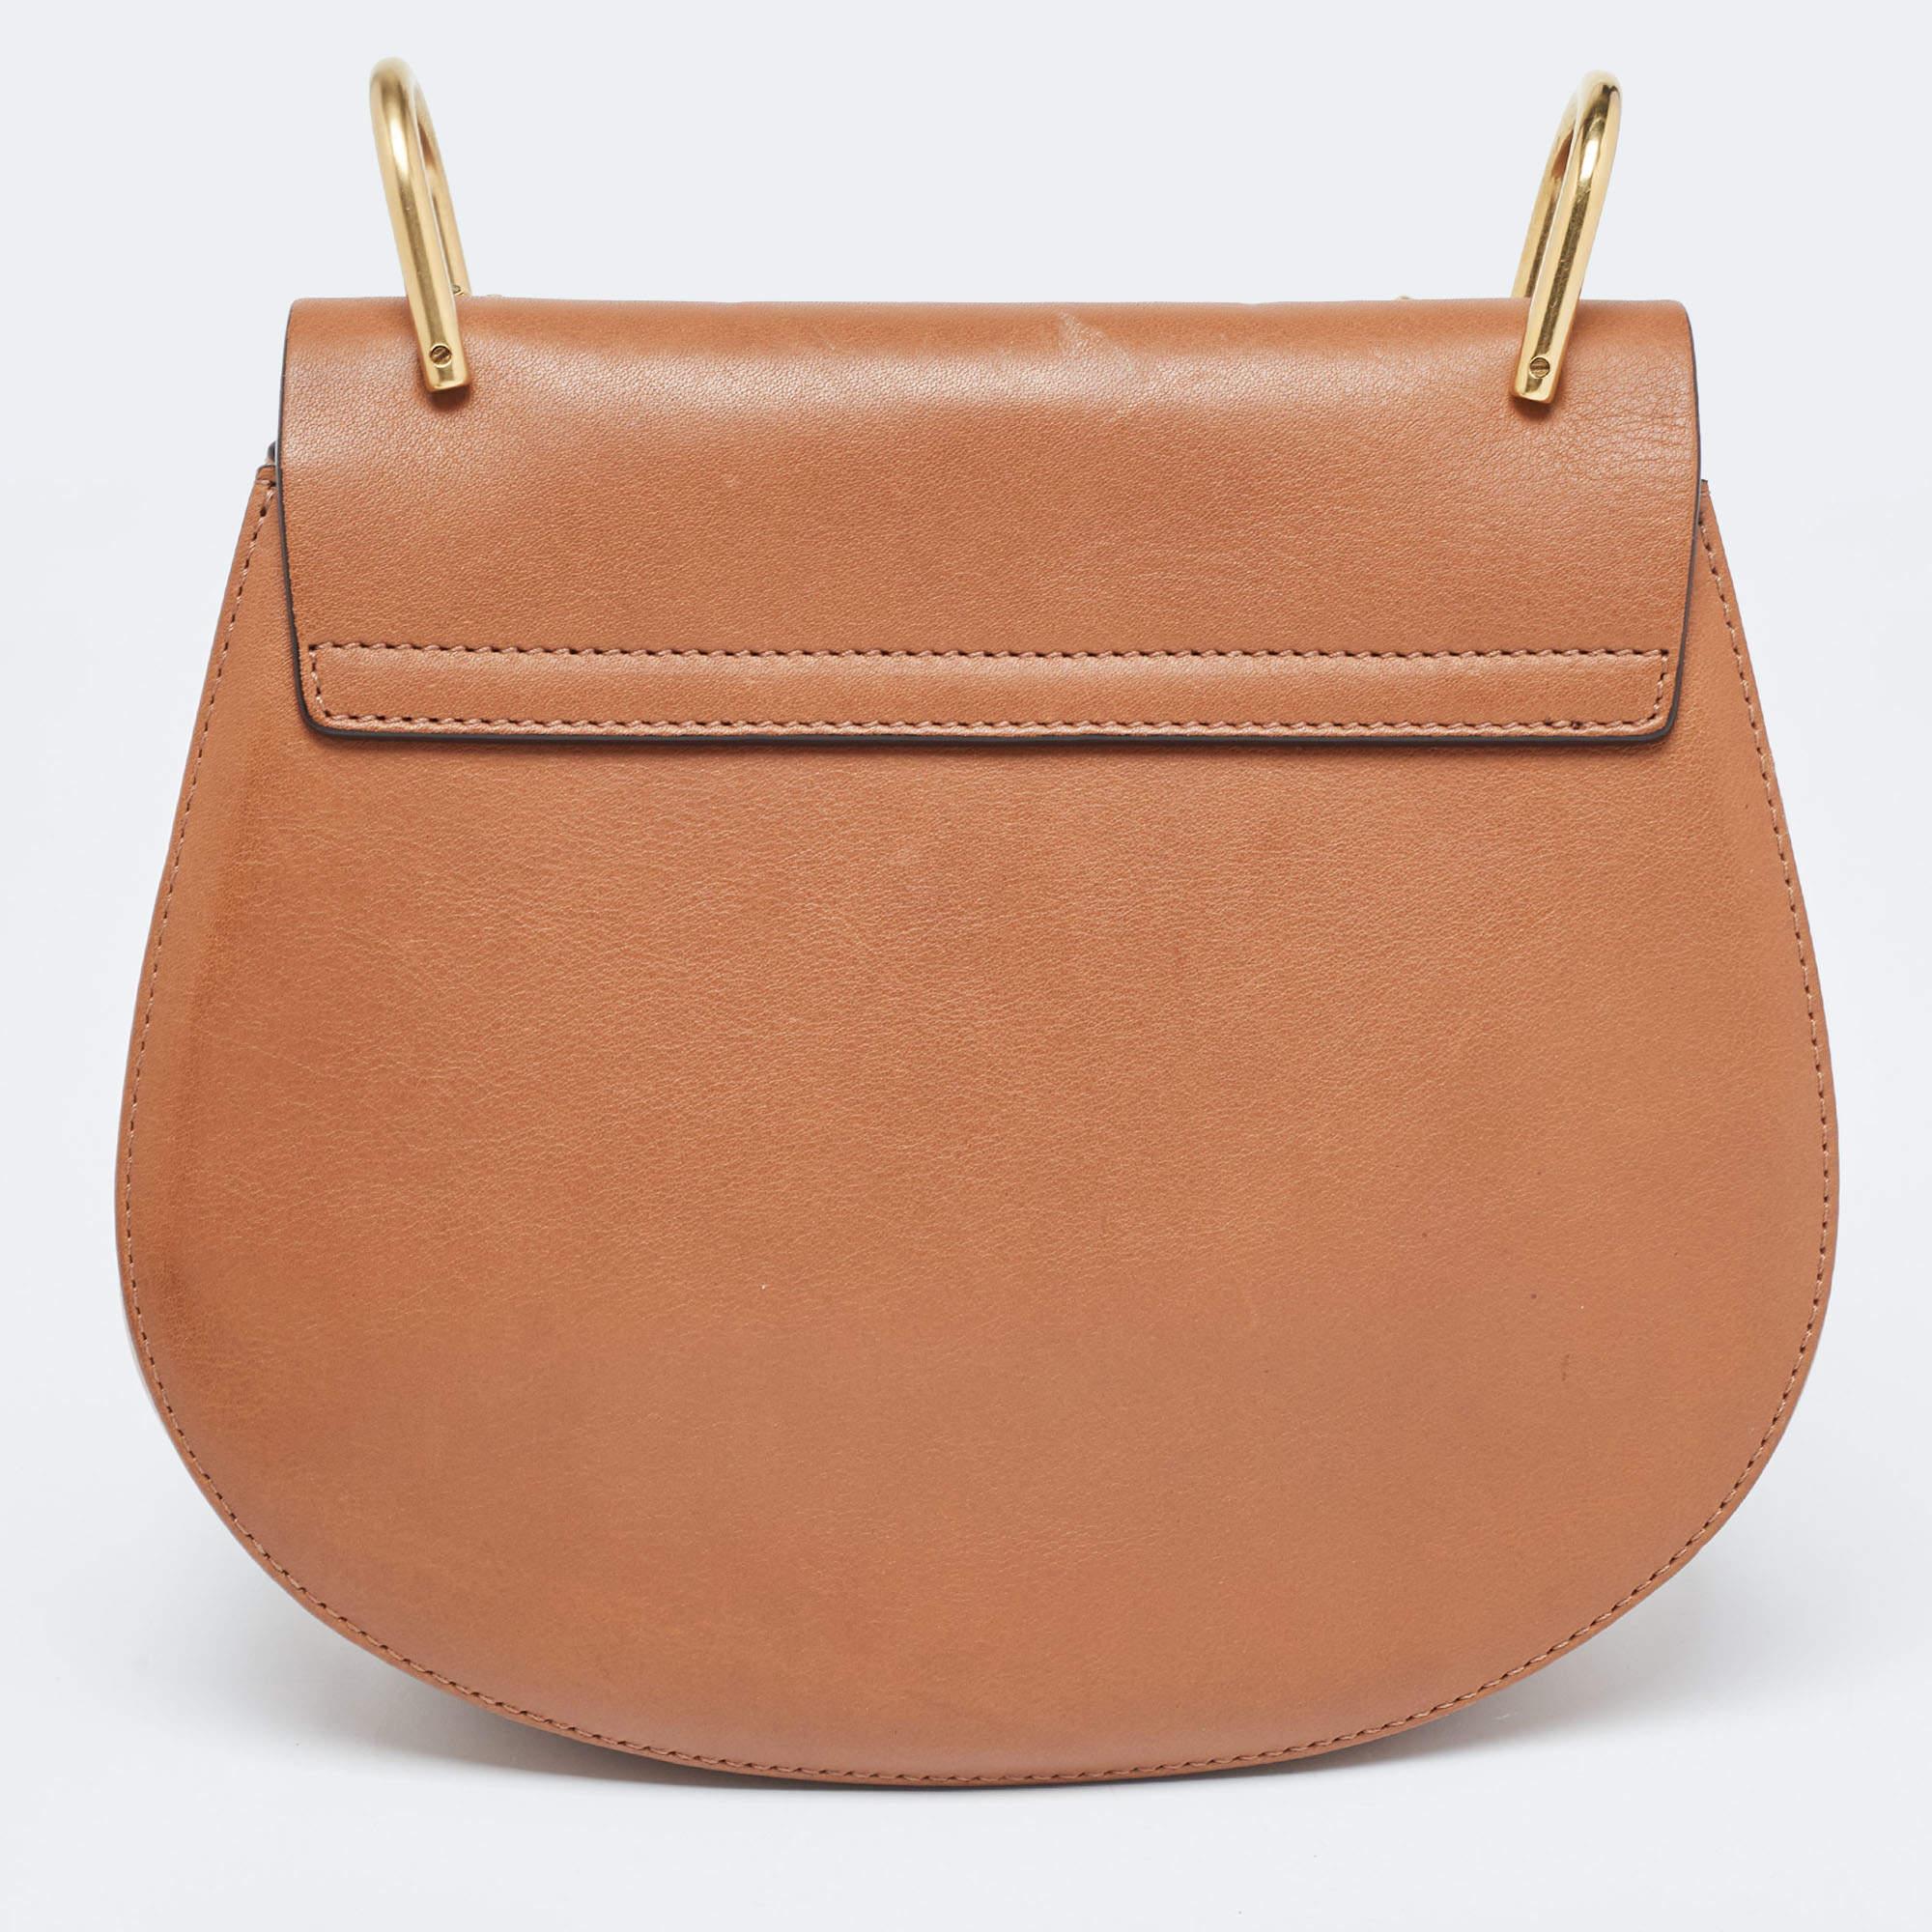 Chloe Beige/Tan Raffia and Leather Medium Drew Shoulder Bag 5